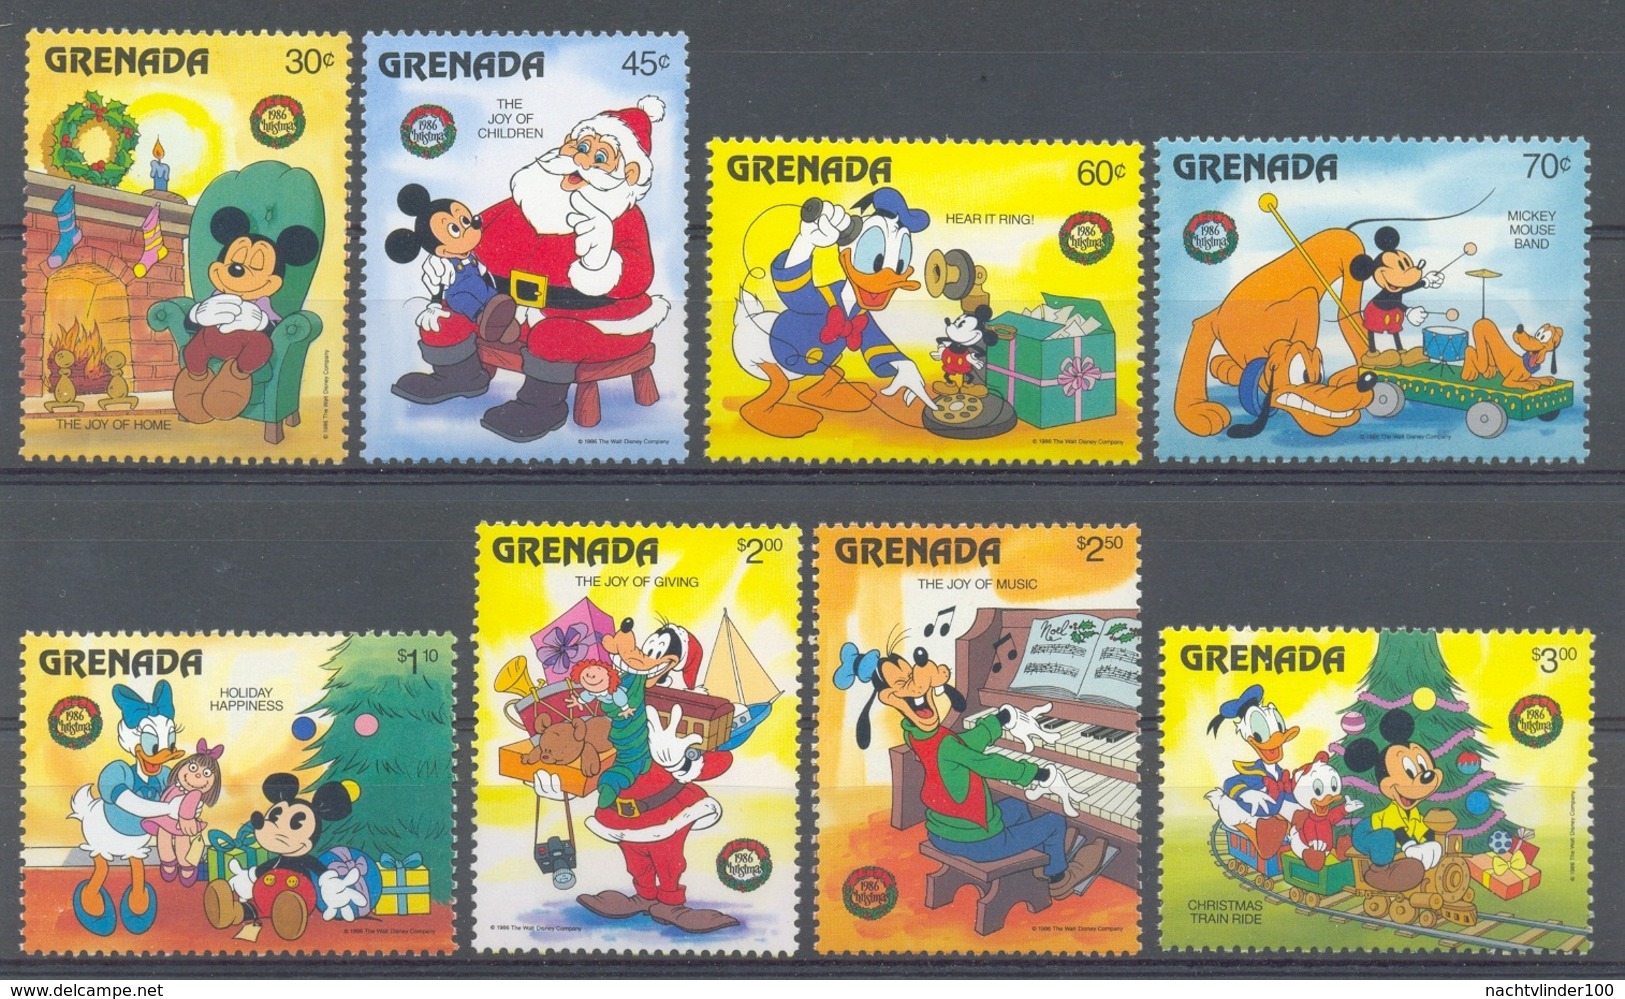 Nap882 WALT DISNEY DONALD GOOFY MICKEY TRAIN TELEPHONE PIANO PHOTOCAMERA CHRISTMAS GRENADA 1986 PF/MNH - Disney